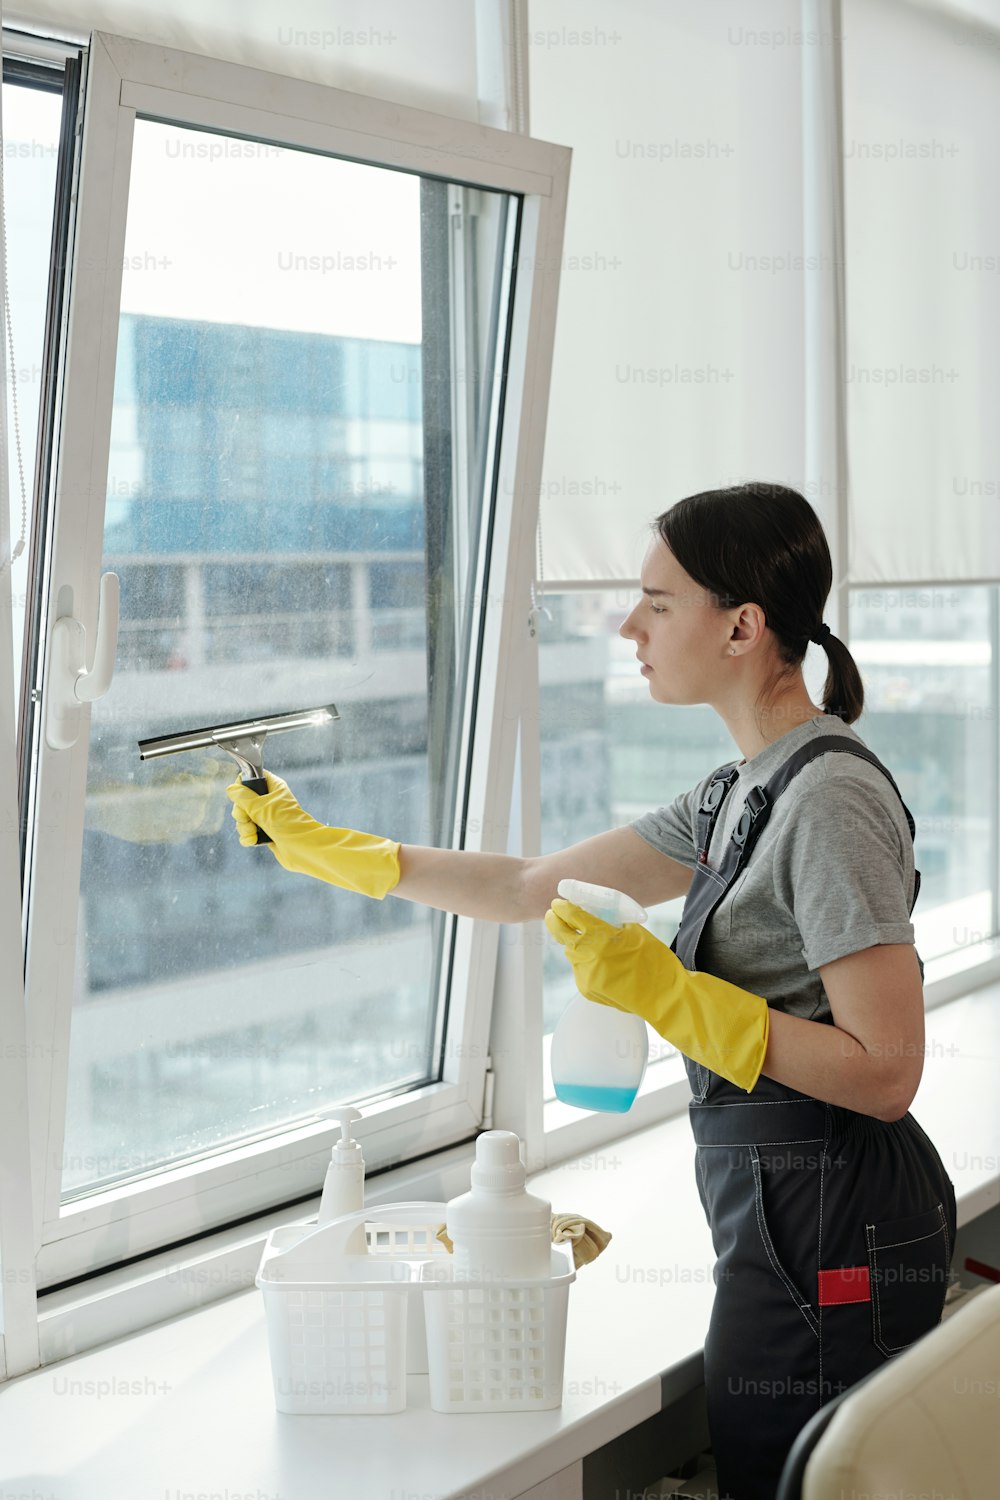 大きなオープンスペースのオフィスで作業しながら、窓に洗剤をスプレーし、特殊なシリコンヘラでこする若い女性の清掃員